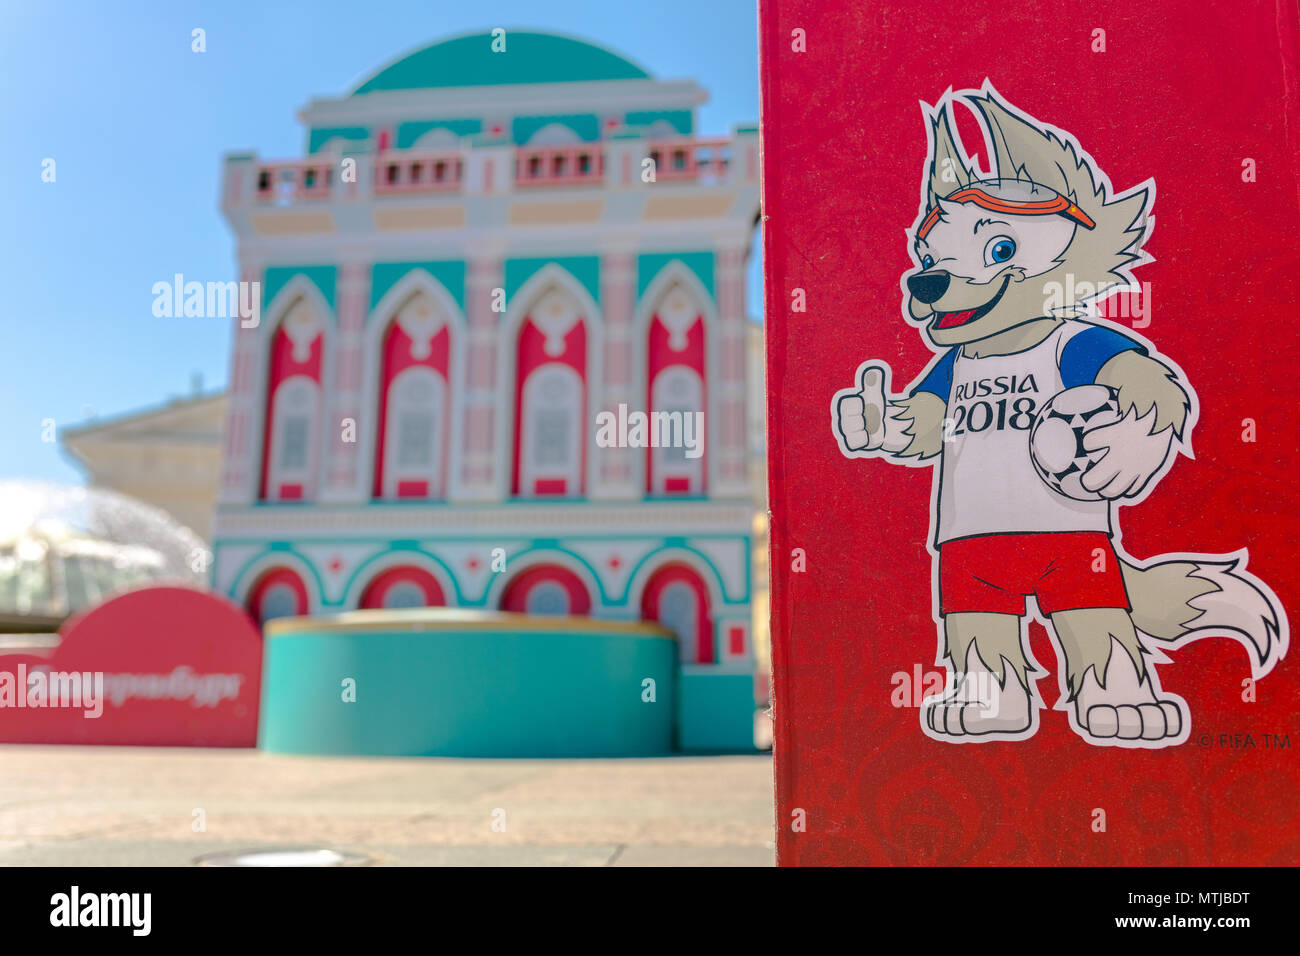 Mascotte officielle de la Coupe du Monde de la FIFA 2018 en Russie - Zabivaka dans les installations de sites emblématiques des villes participants de la Coupe du Monde de la FIFA 2018. Banque D'Images